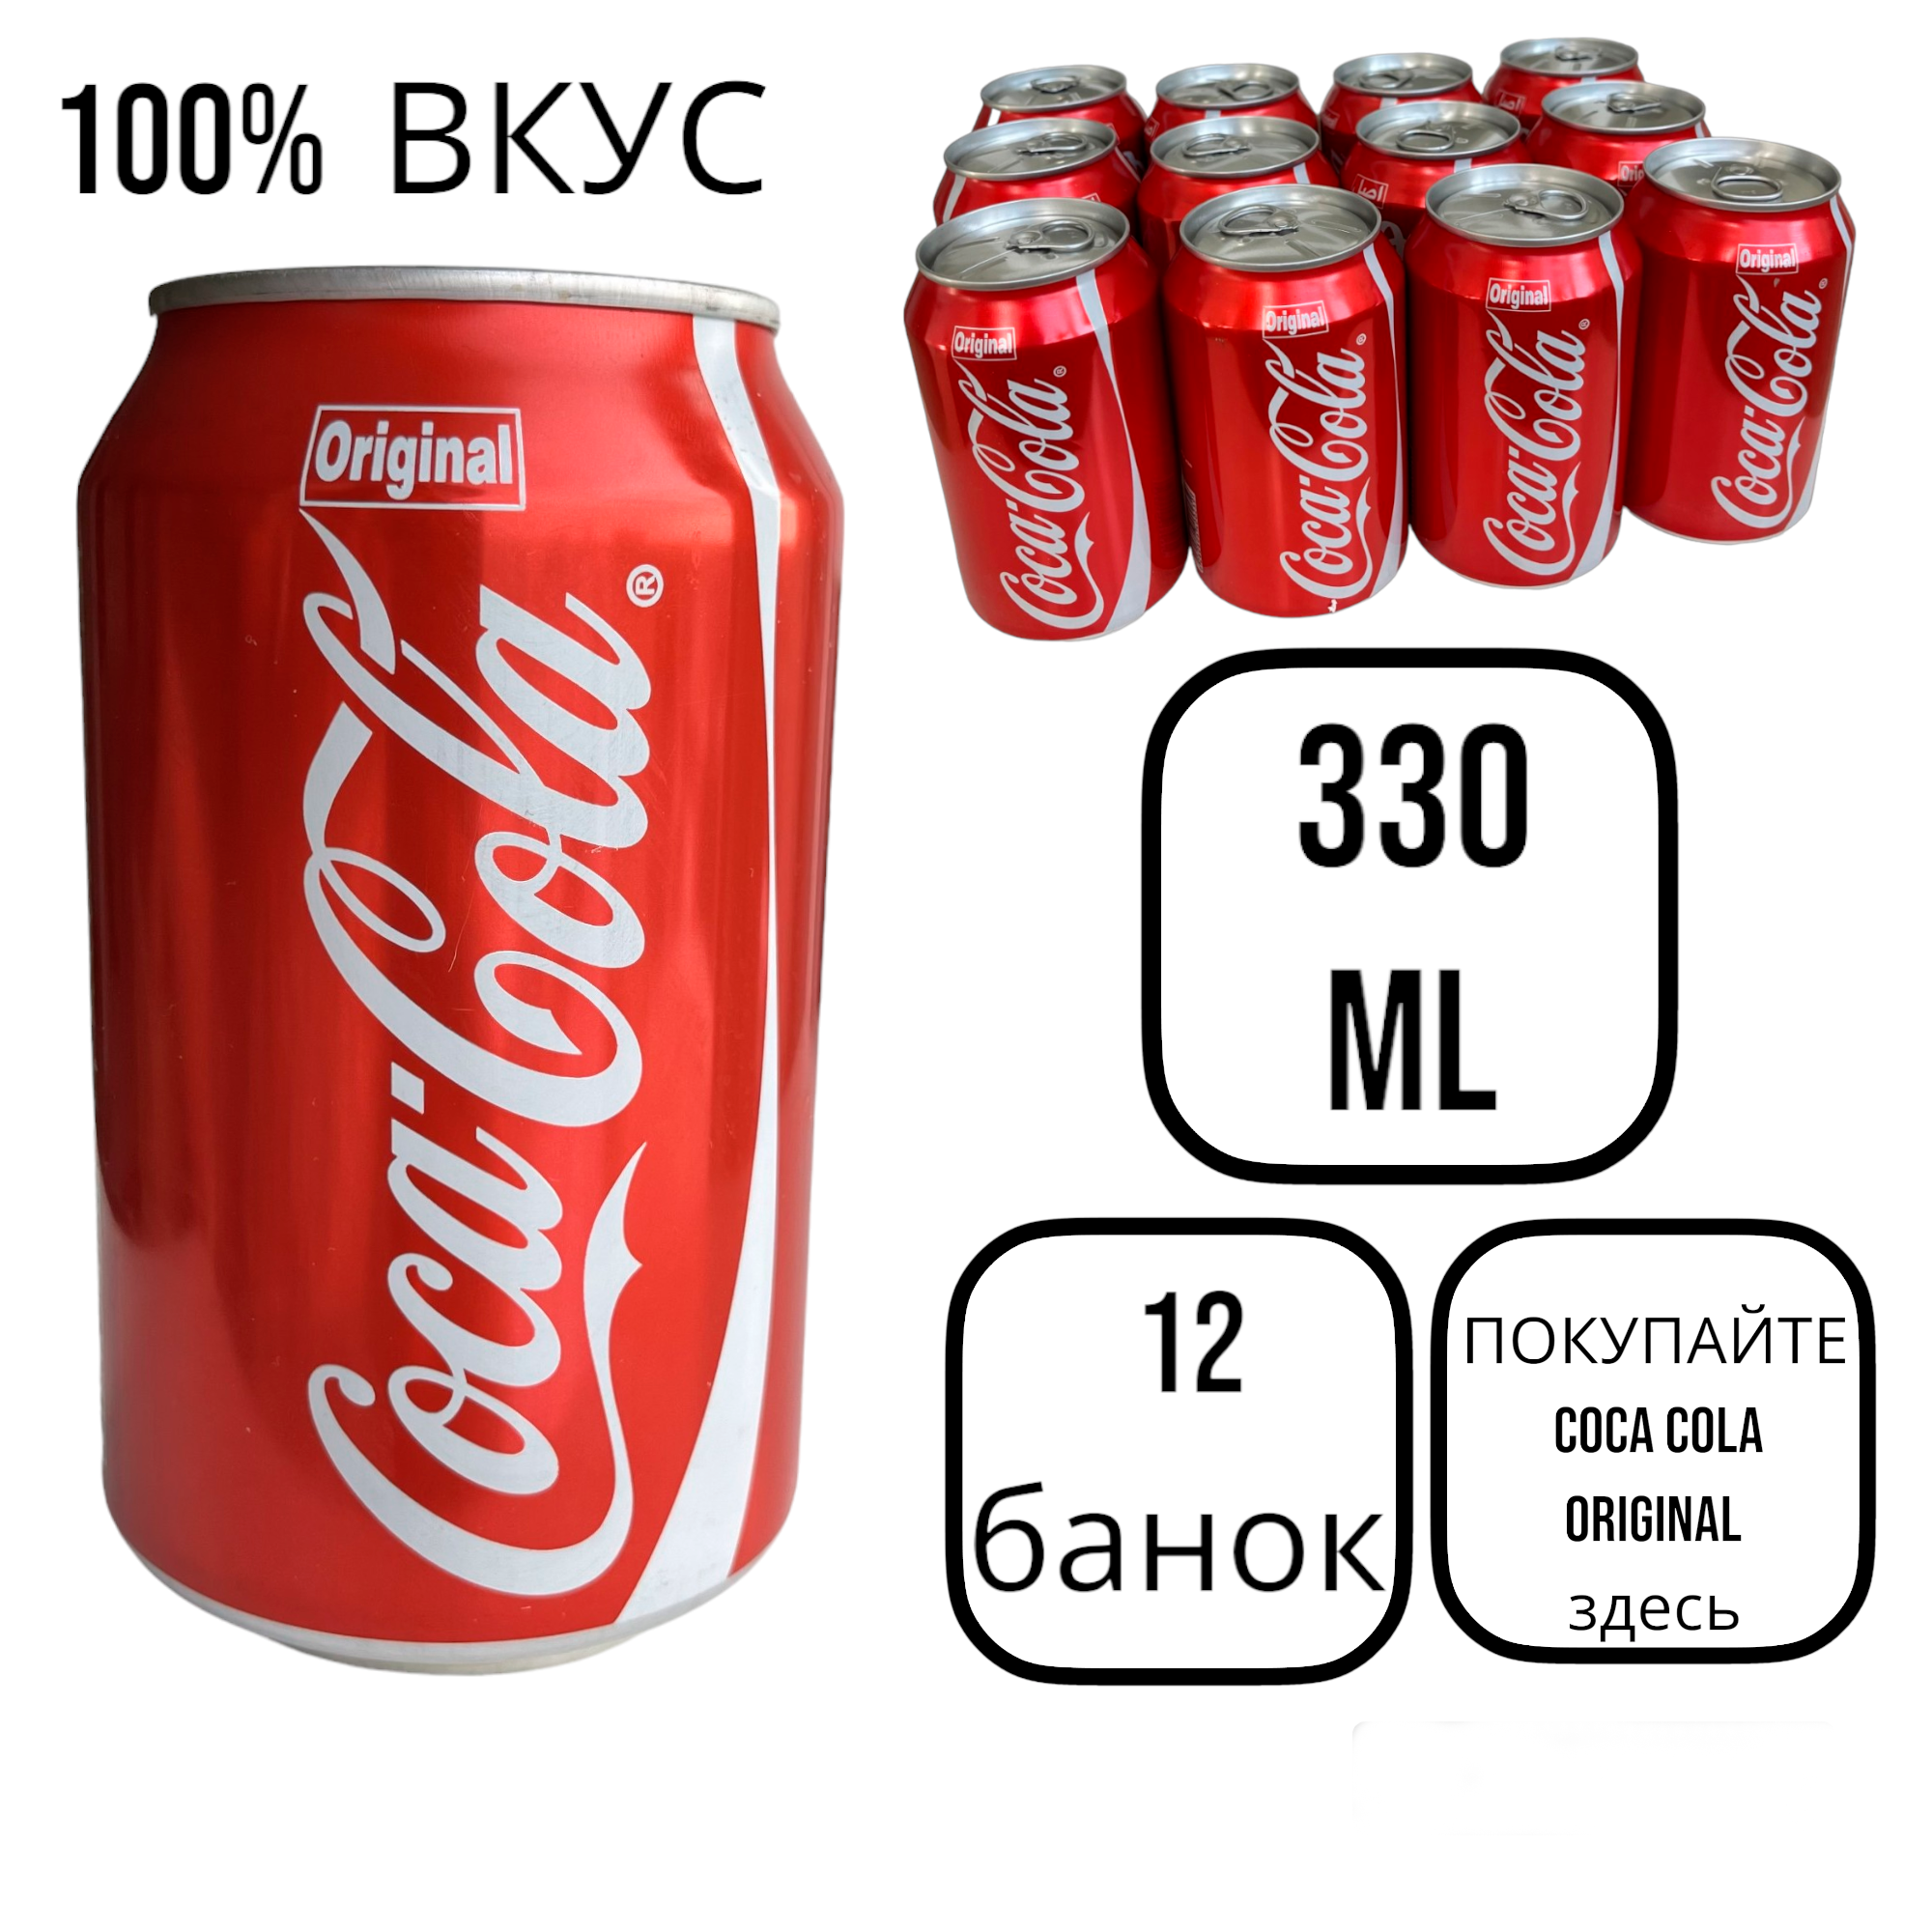 Соса-Cola Original 0,33л, 12шт.